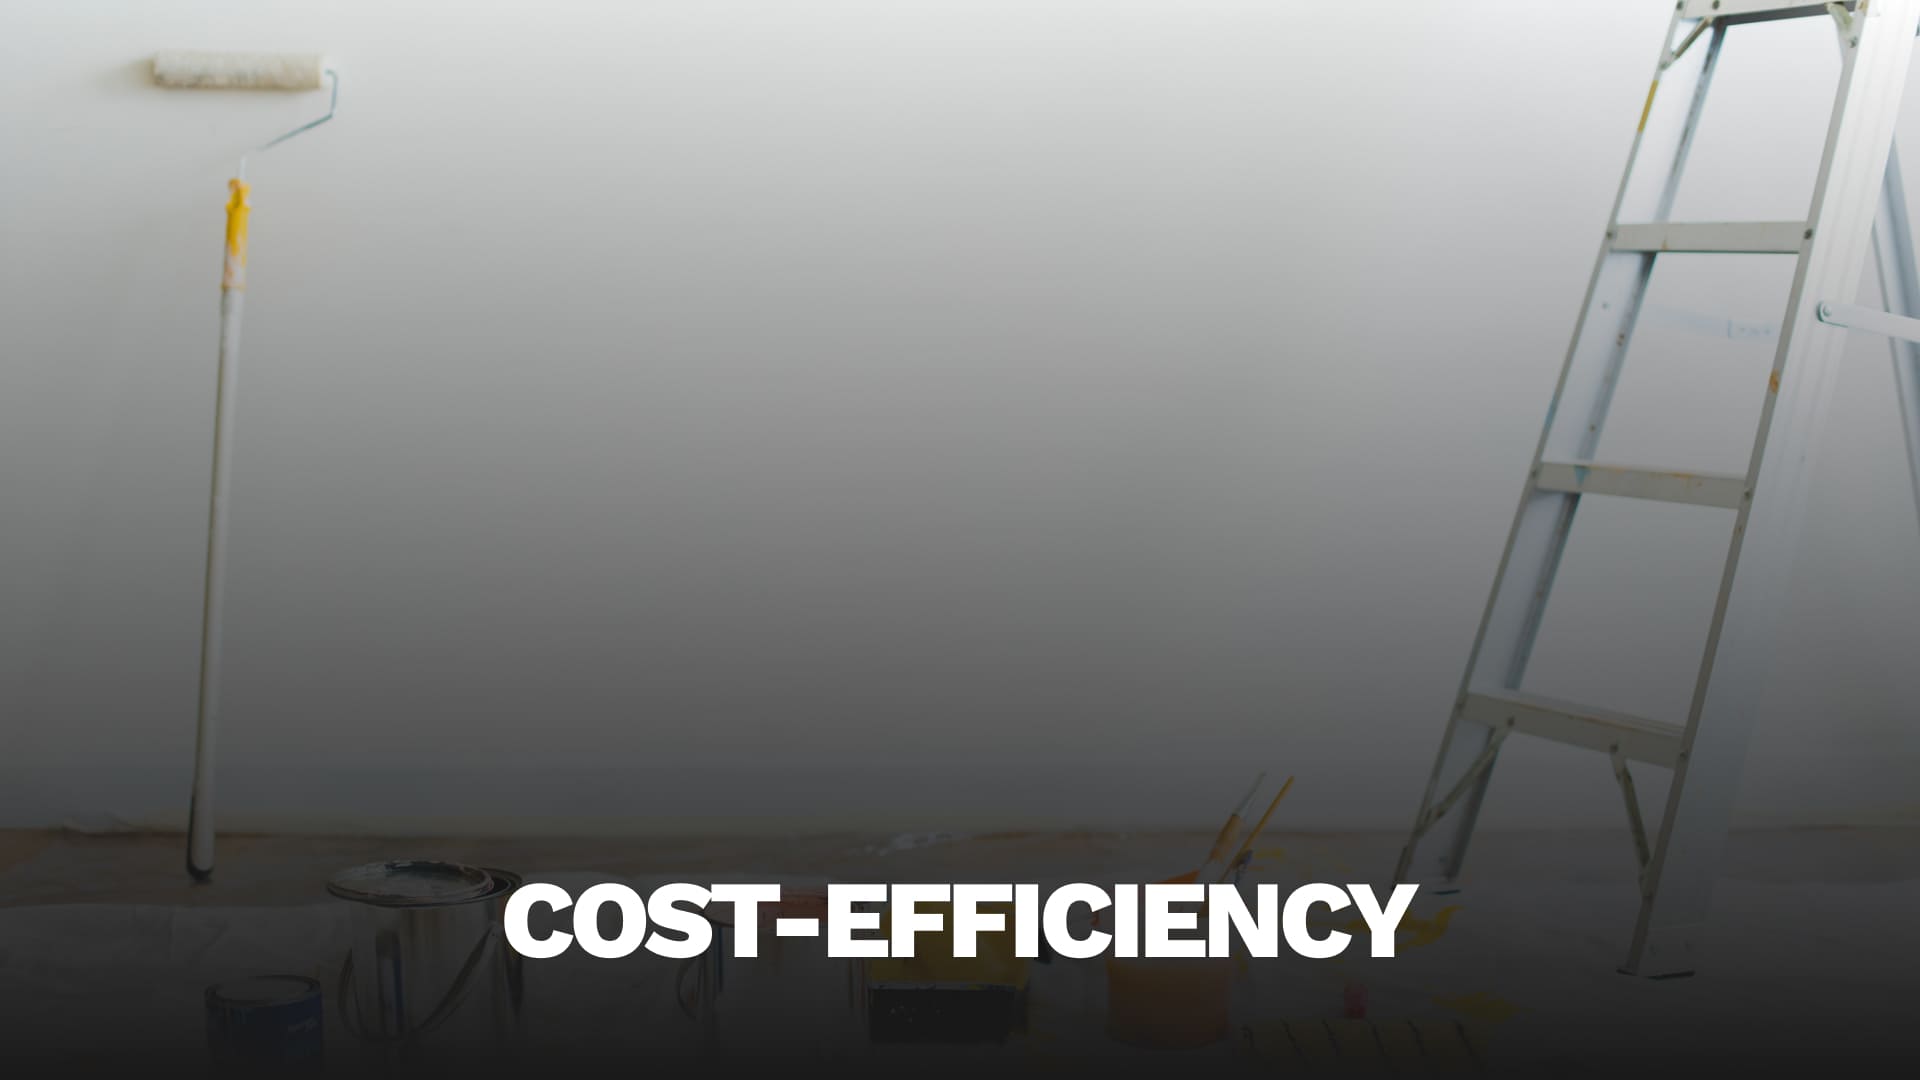 Cost-Efficiency: